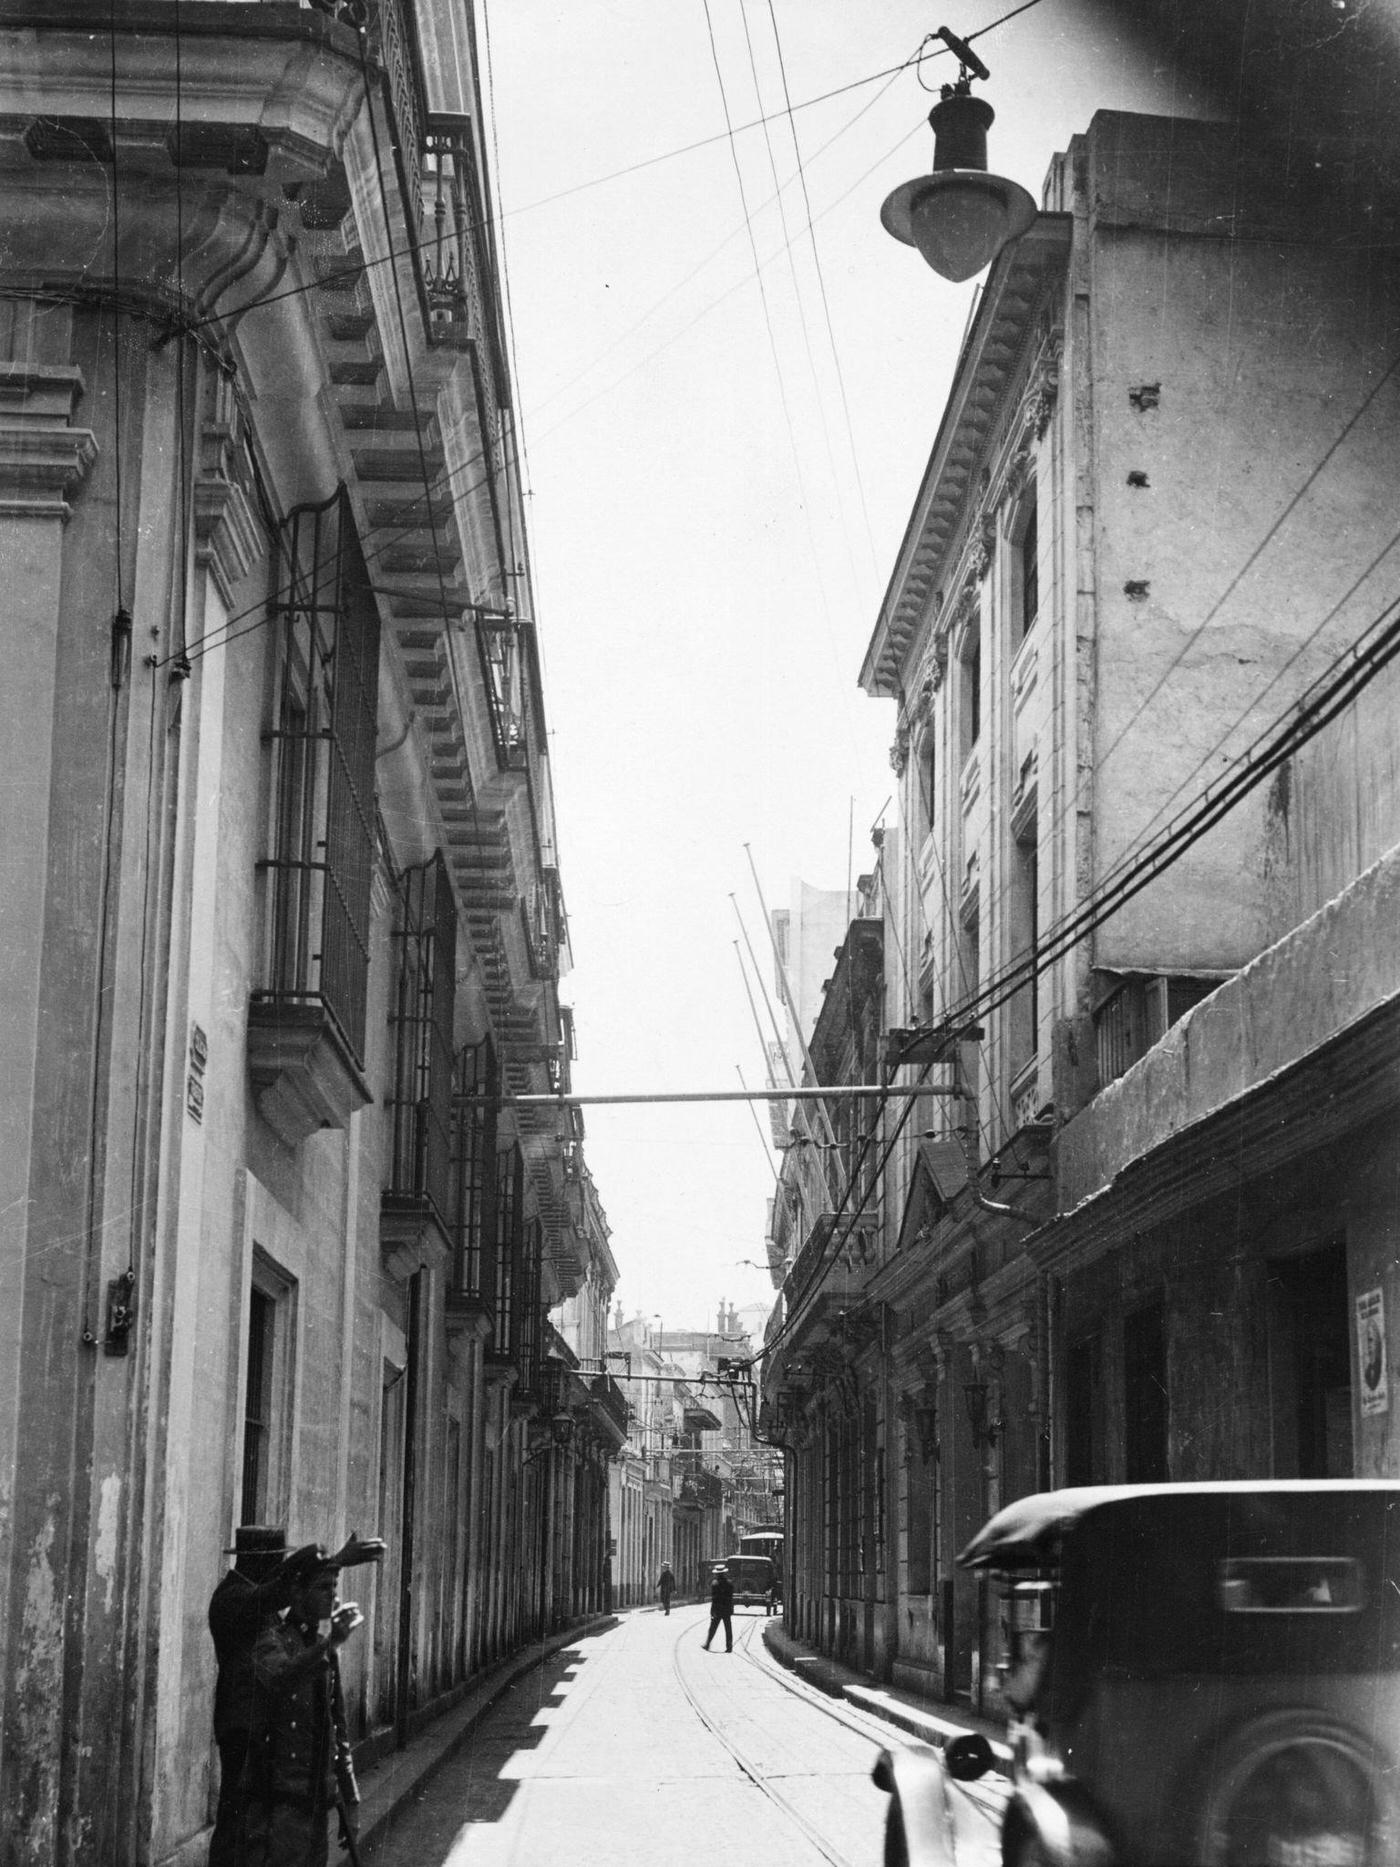 A street in Havana, 1930